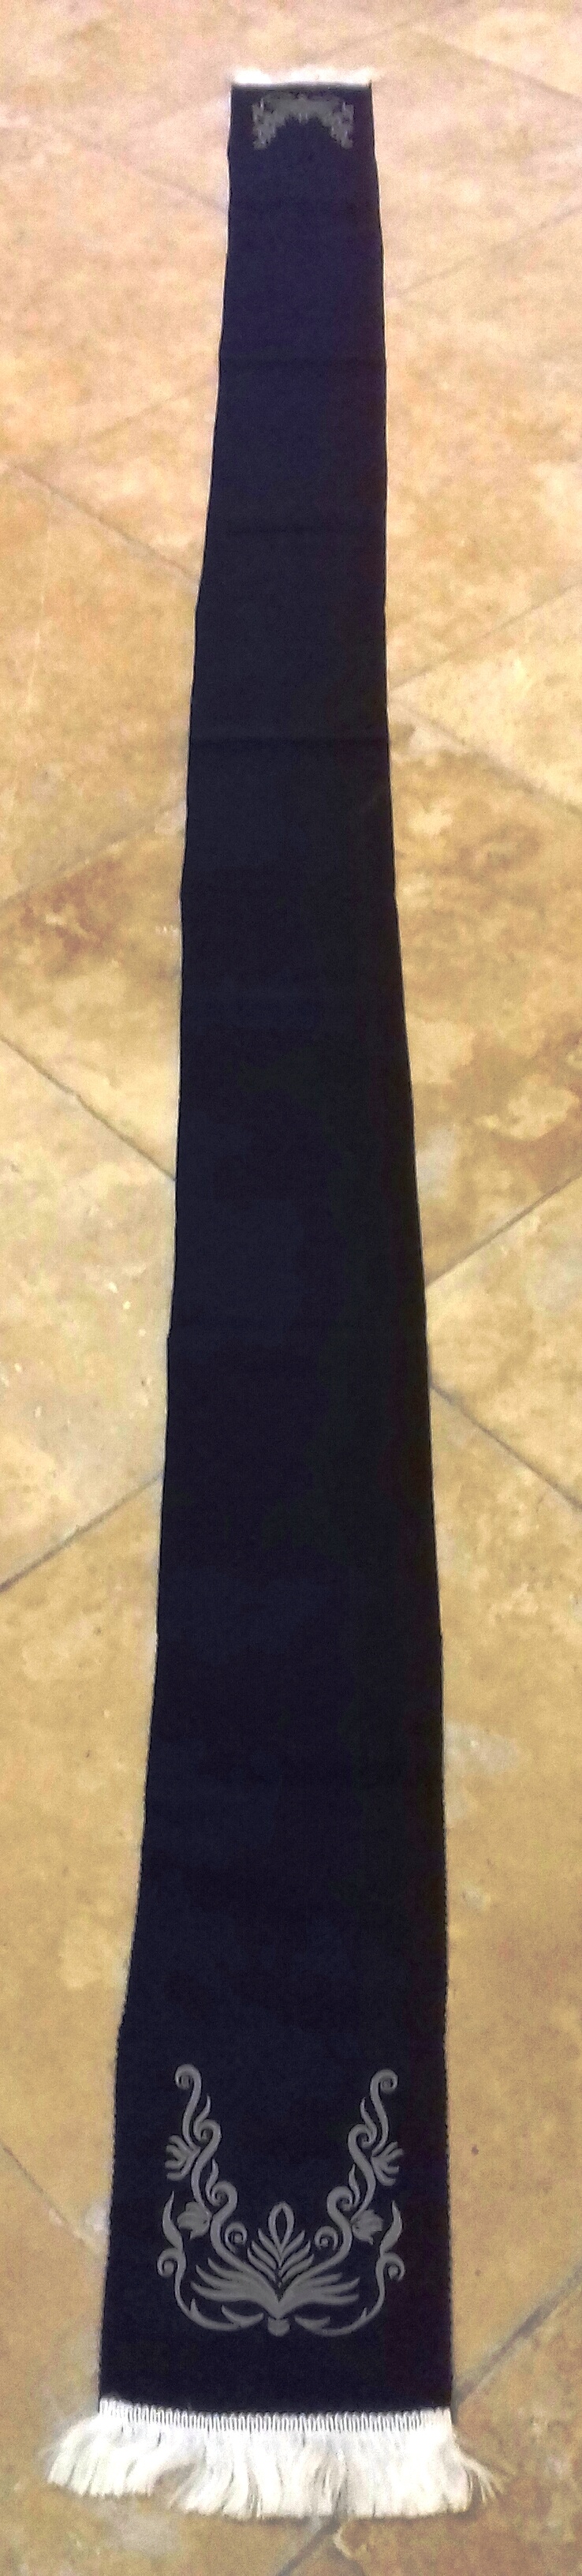 Gyászhuszár vállszalag - fekete, világos szürke vasalt mintával (Nemzeti Örökség Intézete – Kegyeleti Múzeum CC BY-NC-SA)